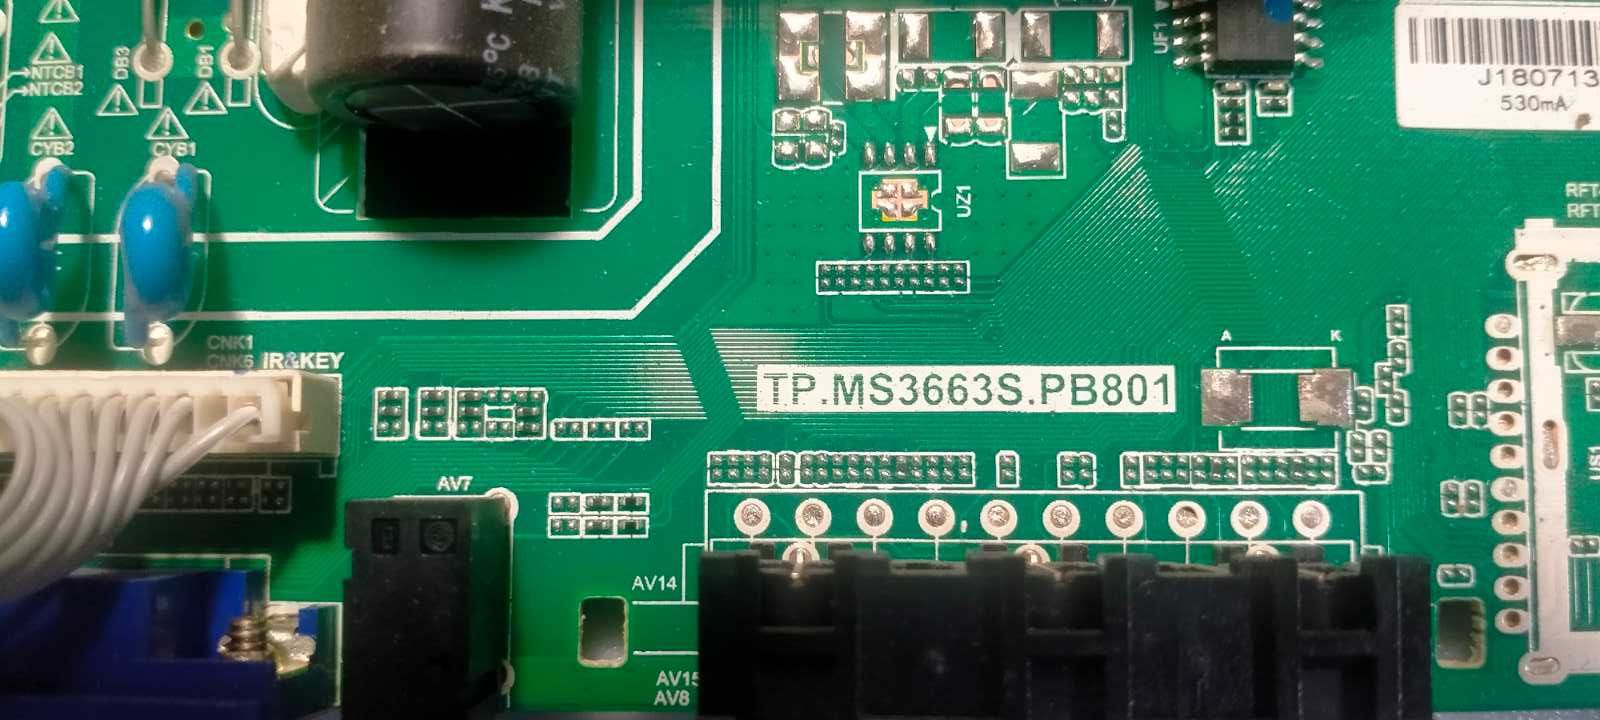 Main board TP.MS3663S.PB801
1